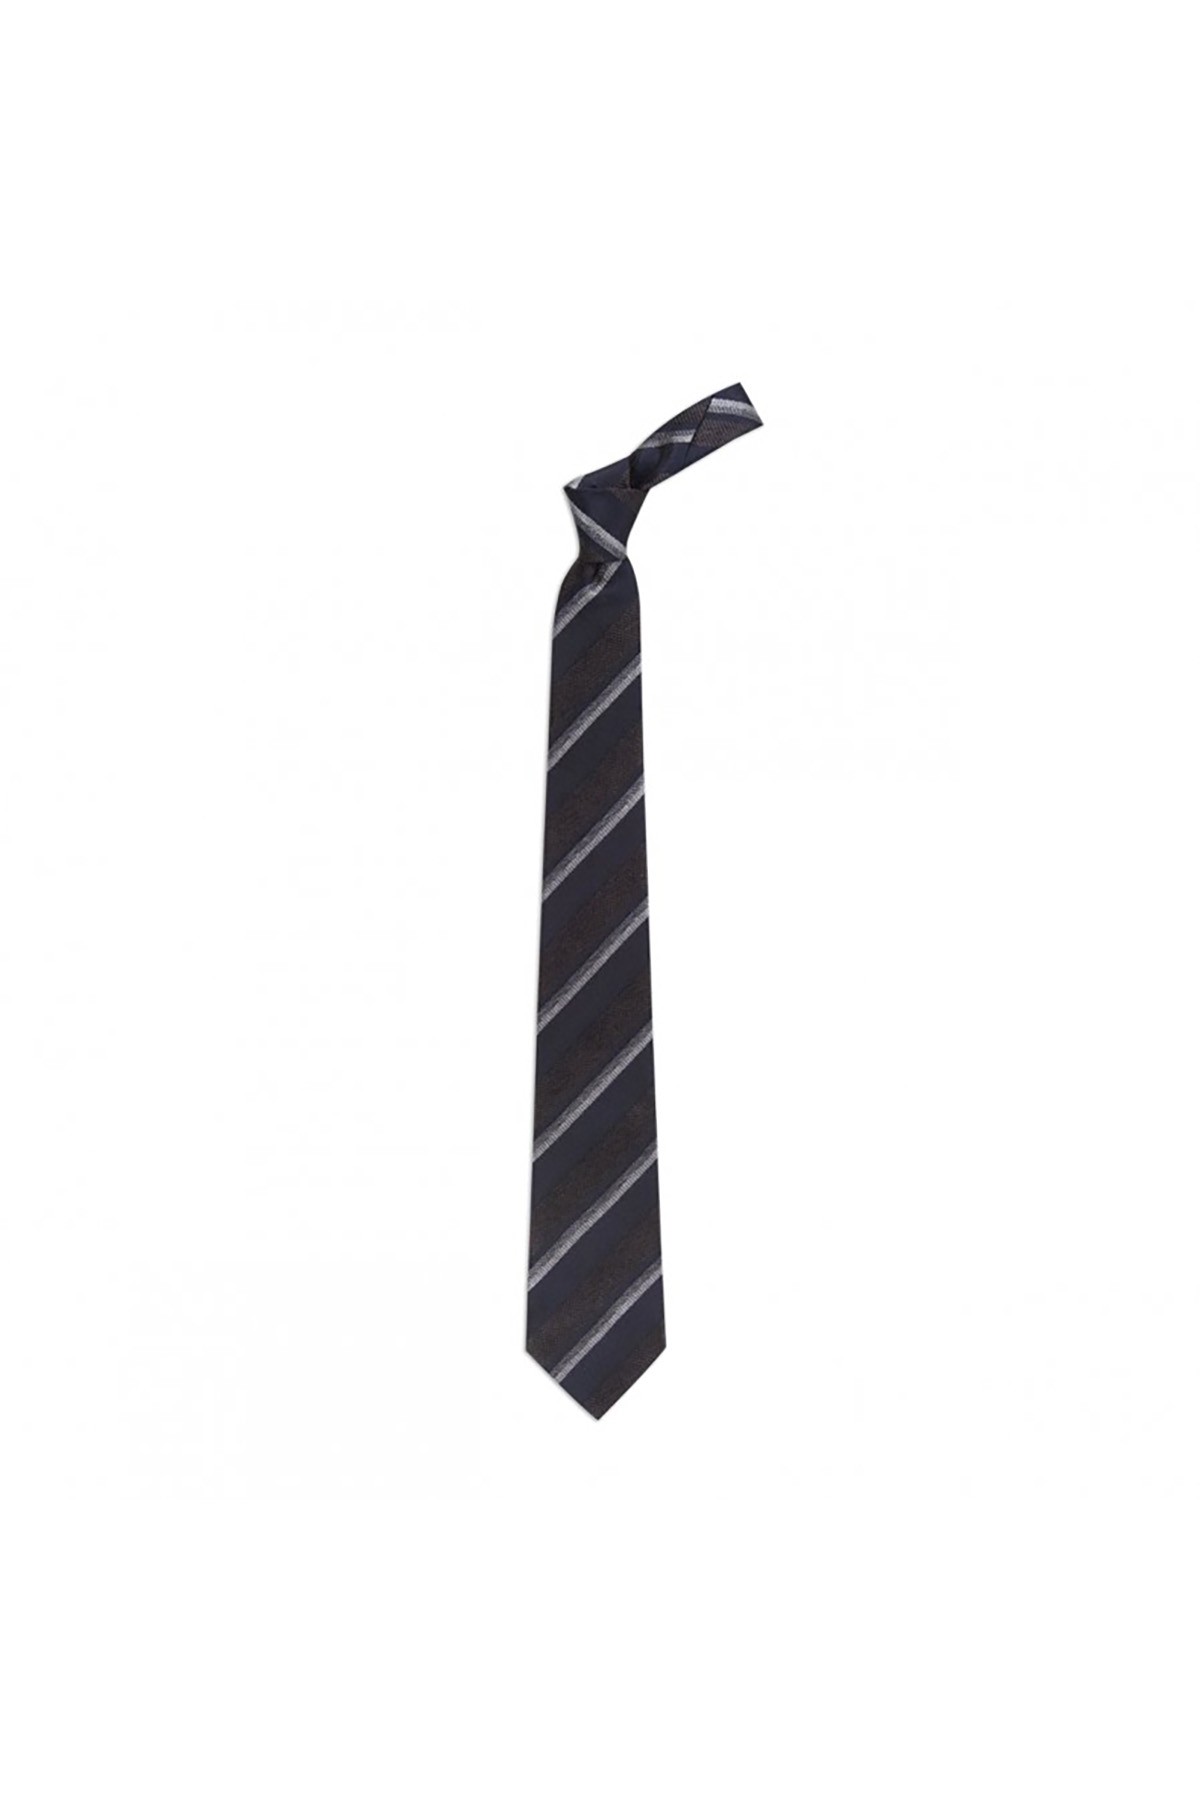 Desenli 8 cm genişliğinde yün ipek karışımlı kravat - Lacivert